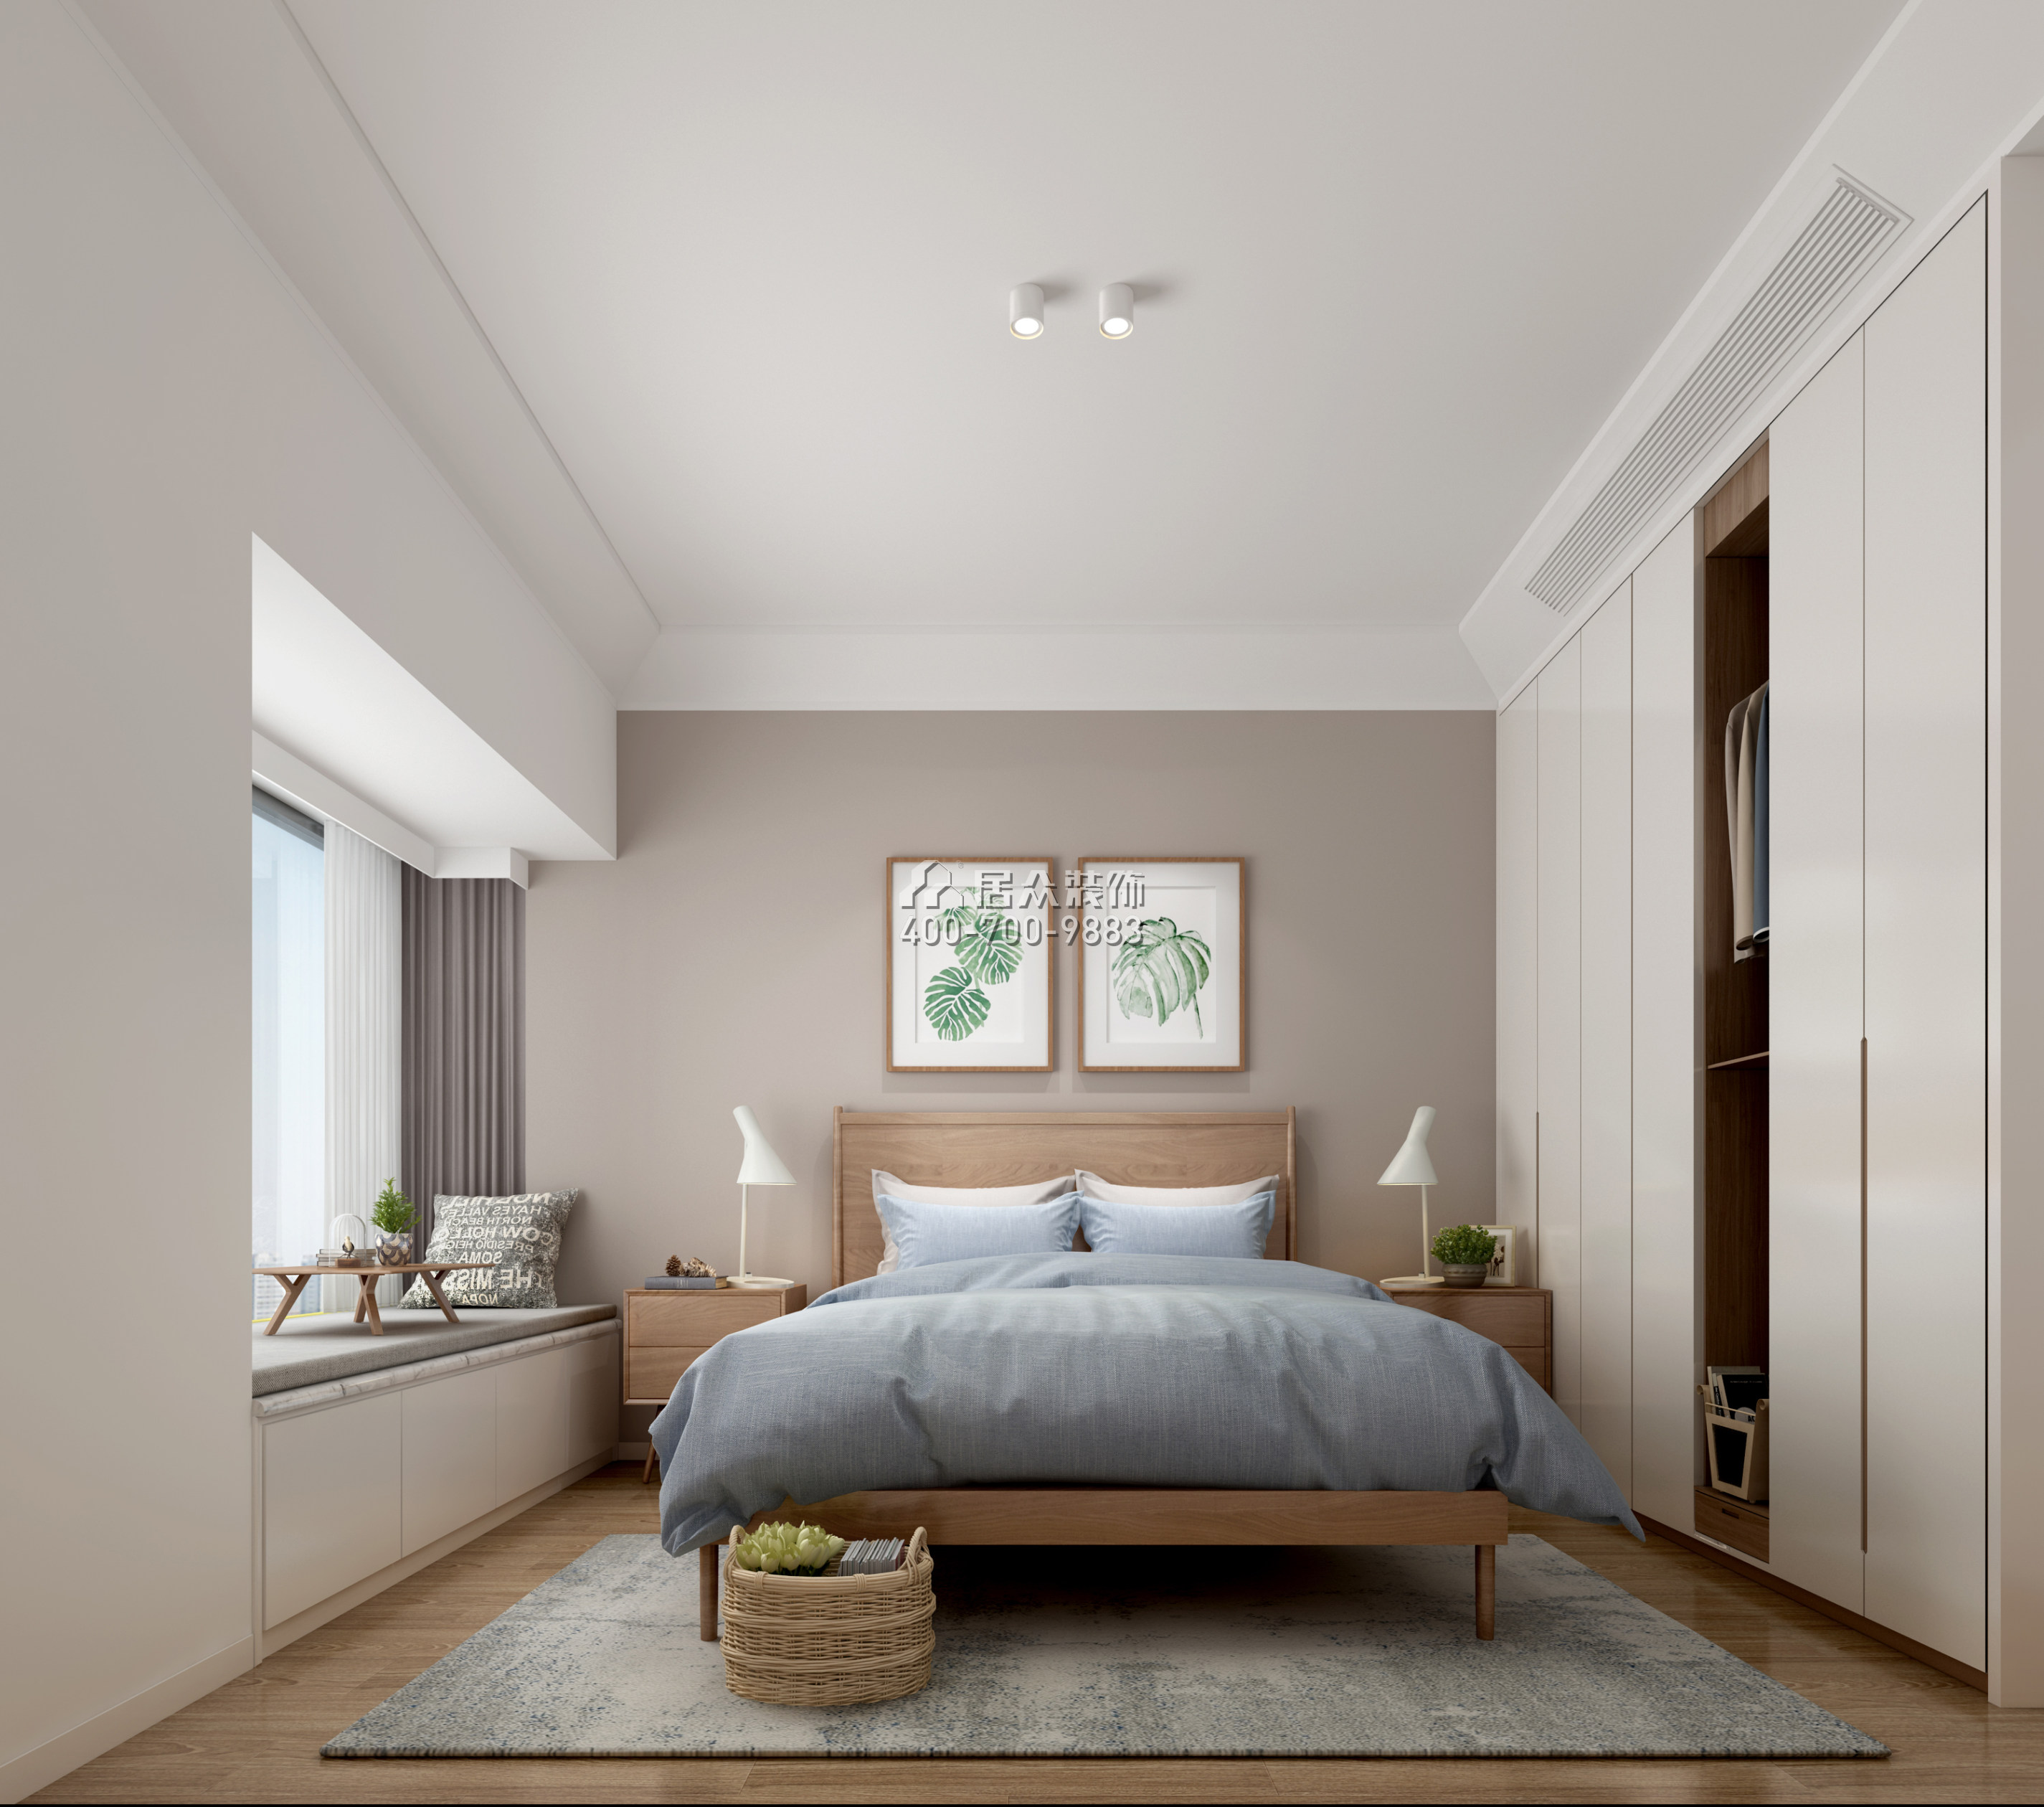 高发西岸花园140平方米现代简约风格平层户型卧室装修效果图